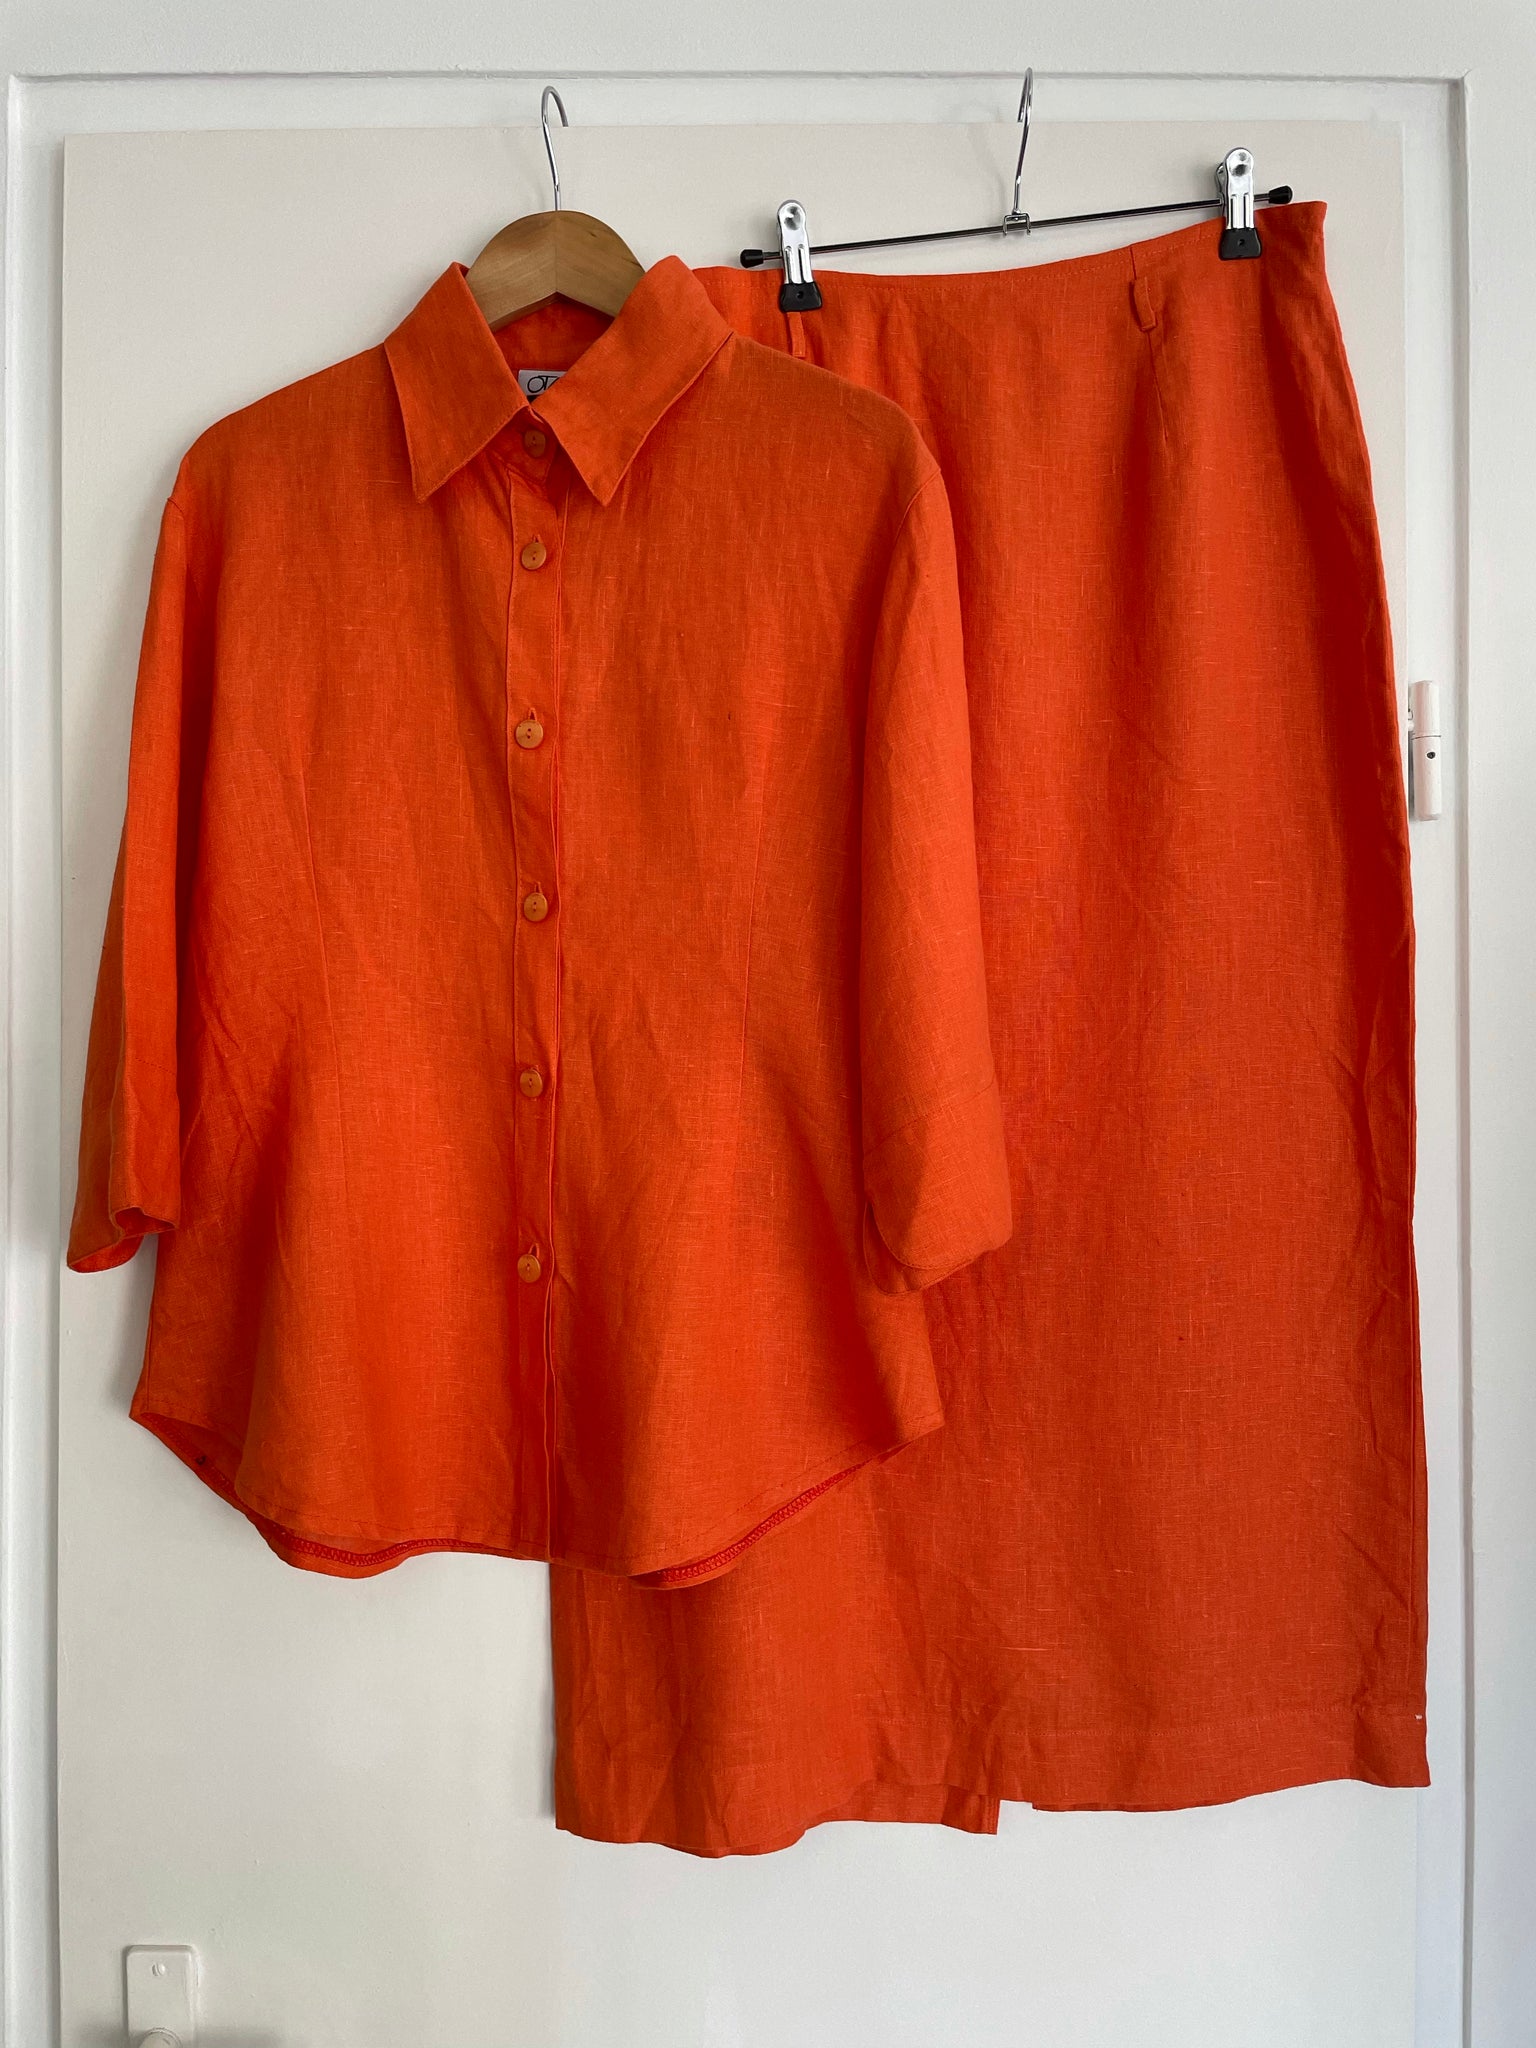 Orange Linen Suit 40